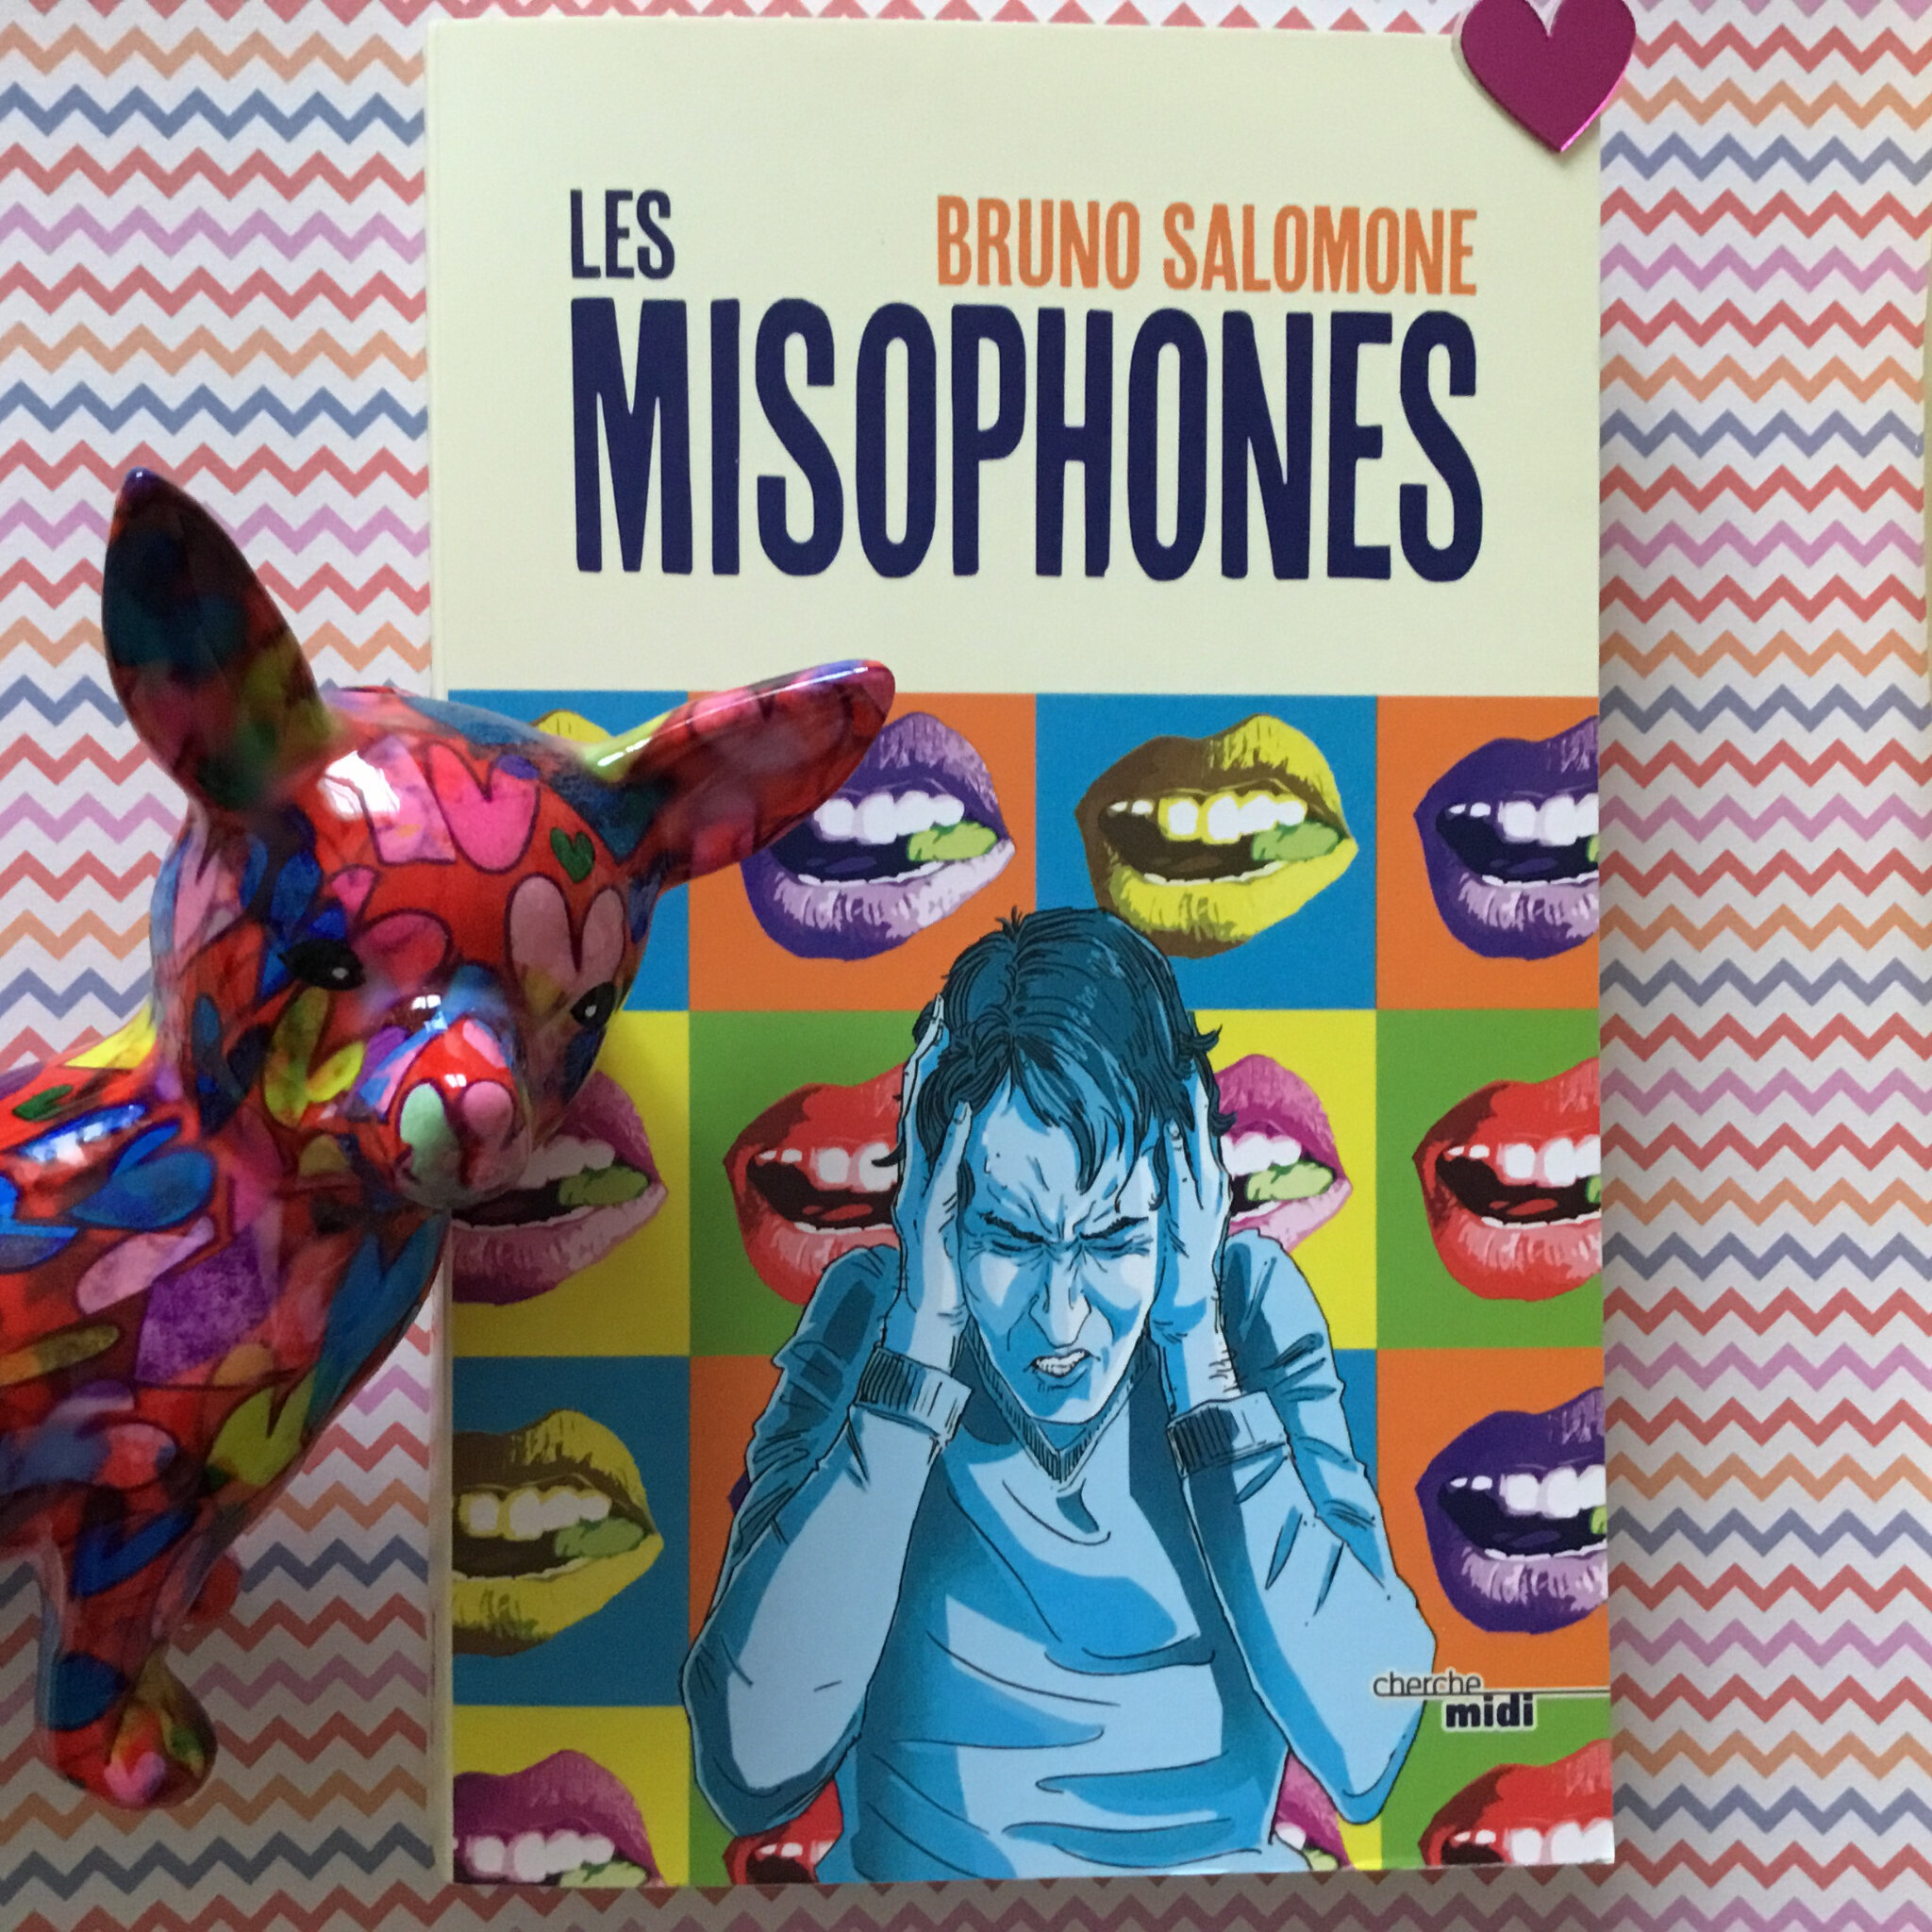 Les misophones, Bruno Salomone – Valmyvoyou lit